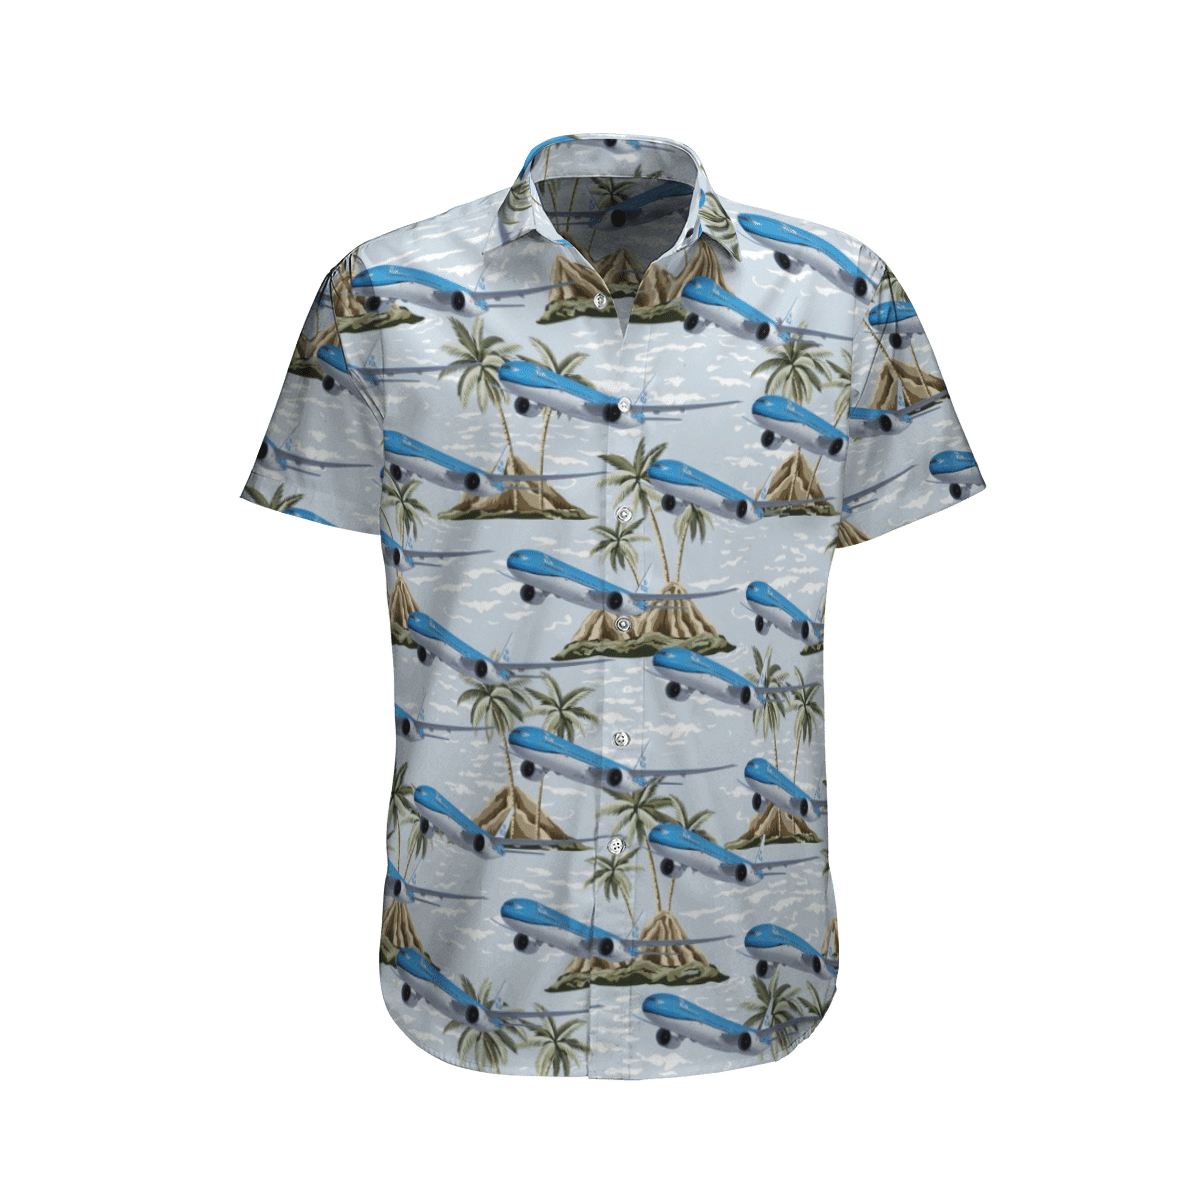 Best Cool Hawaiian Shirt To Enjoy Summer Vacation Word3